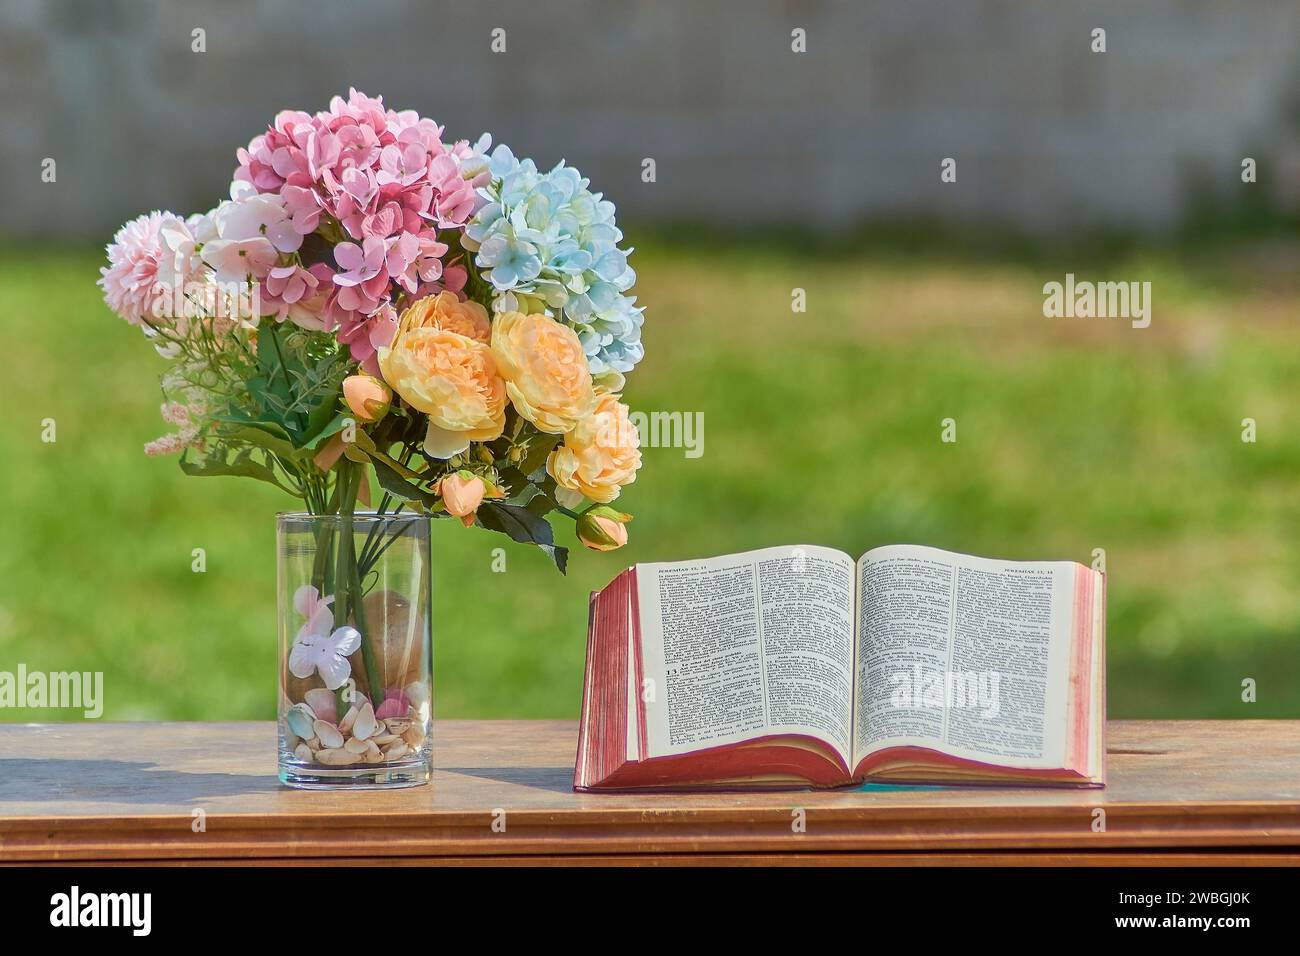 Offenes Bibelbuch mit Blumen in verschiedenen Farben daneben. Die Bibel steht auf einem Medera-Tisch, Hintergrund ist unscharf. Christliches Konzept Stockfoto